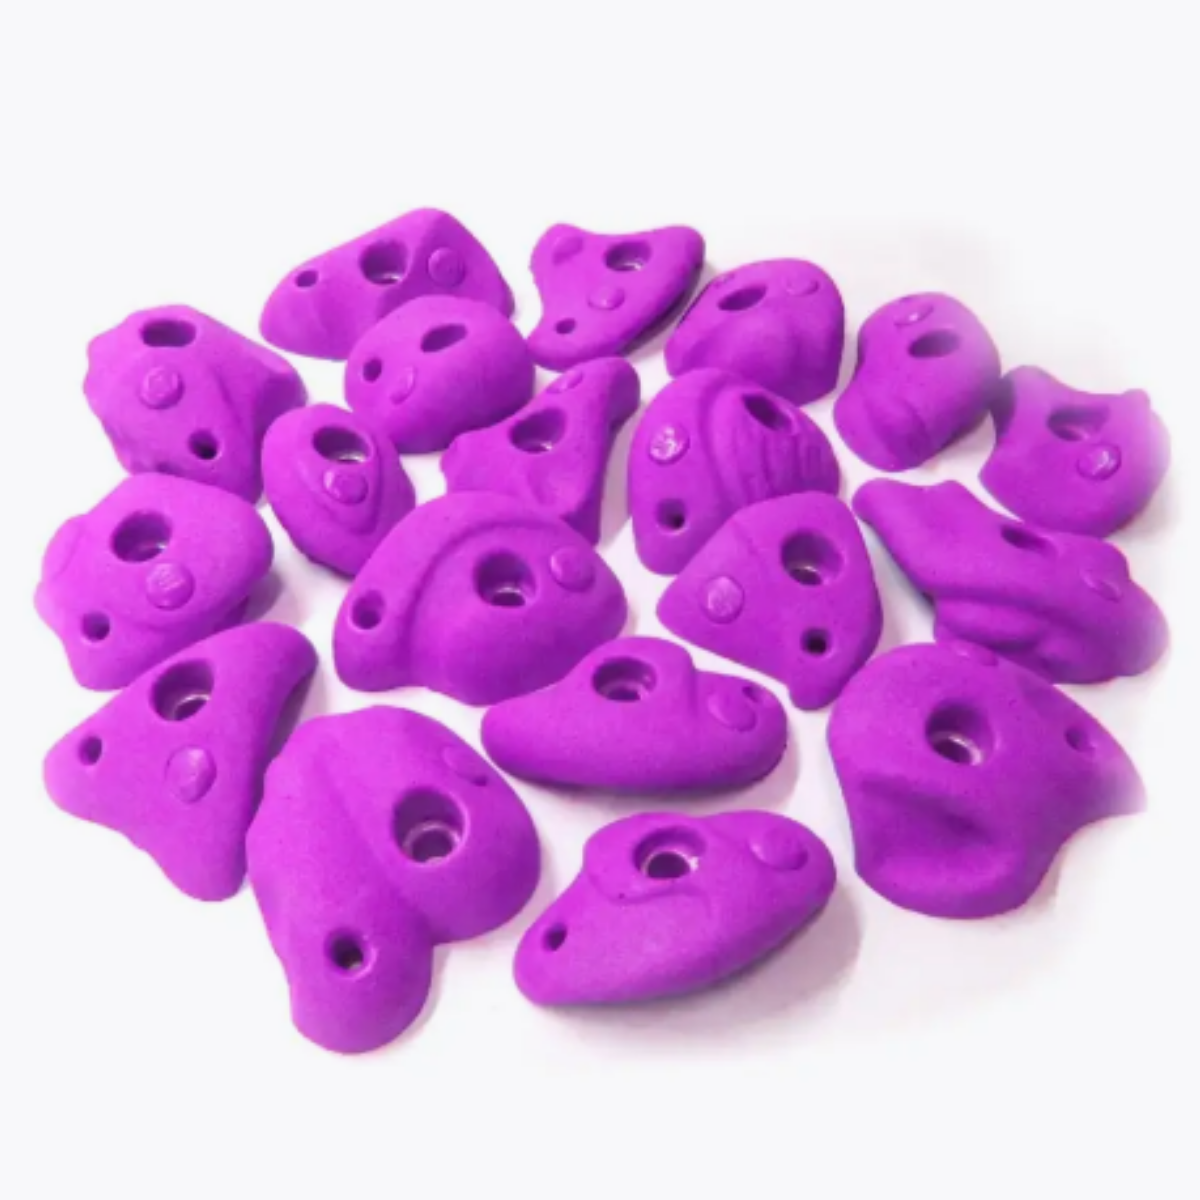 Зацепы для скалодрома детские Скалодромы Жужа Flexure фиолетовые 19 шт.